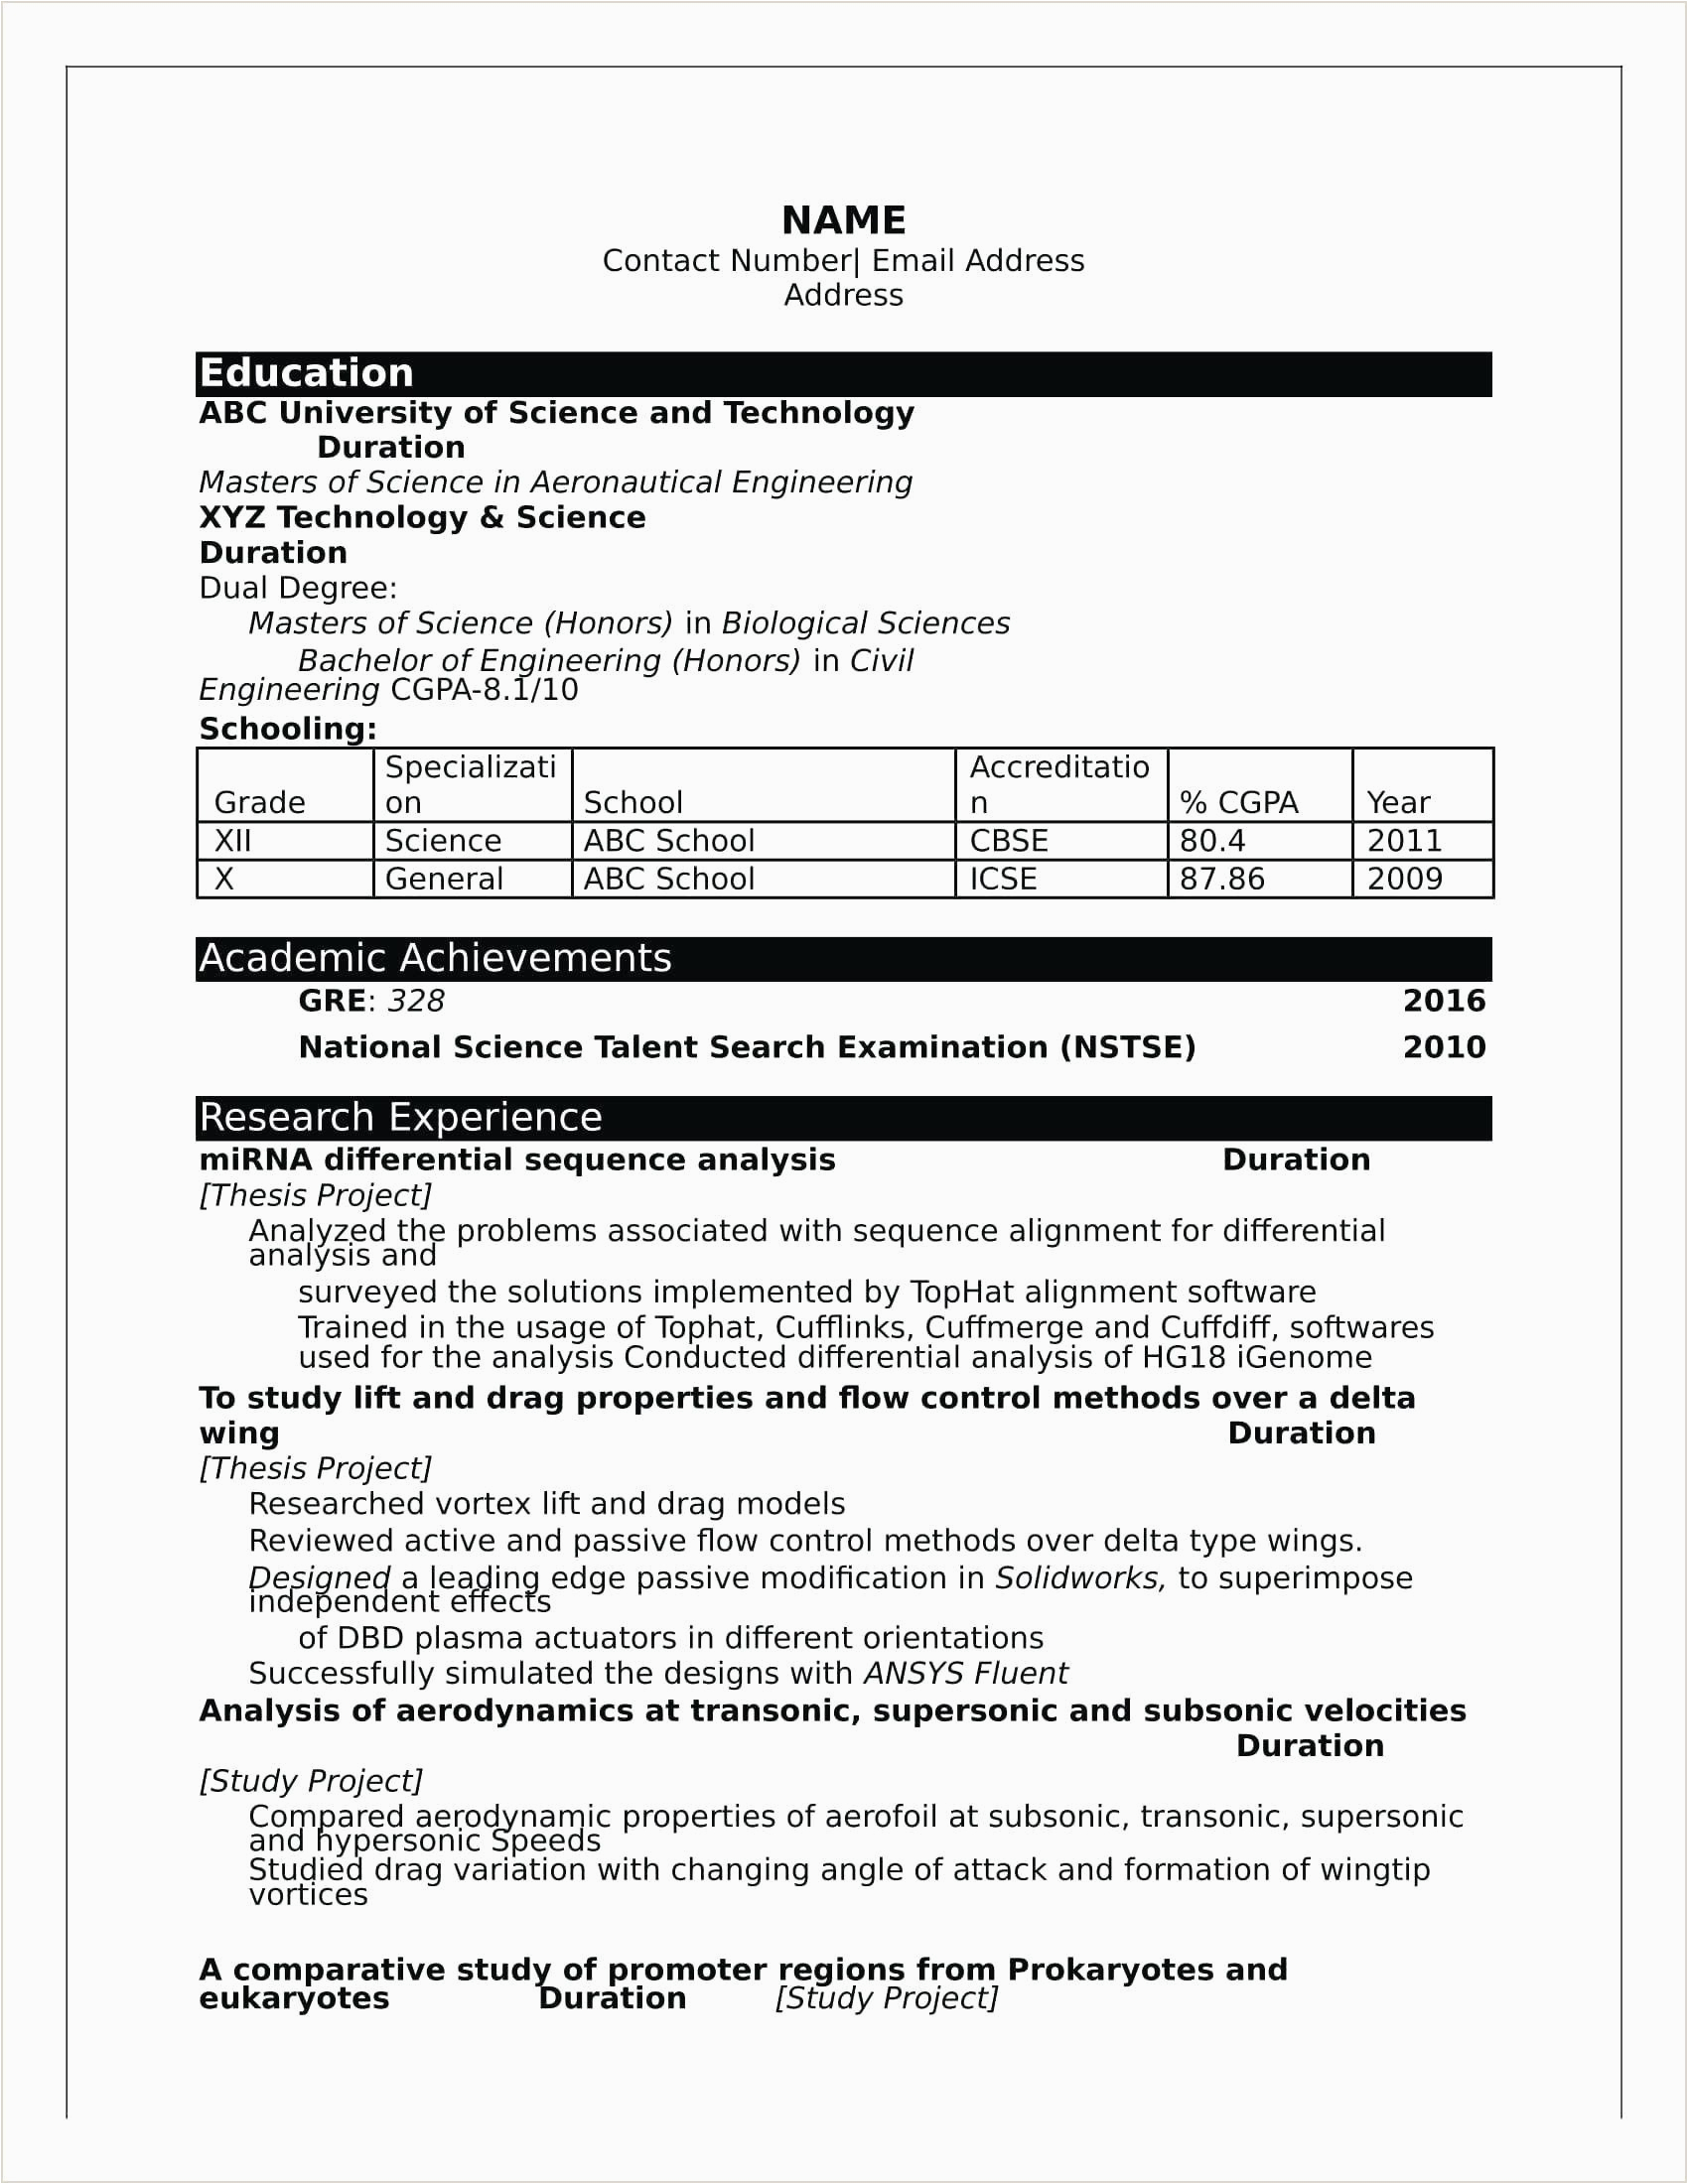 Sample Resume for Civil Engineer Fresher Pdf Fresher Civil Engineer Resume format Pdf Best Resume